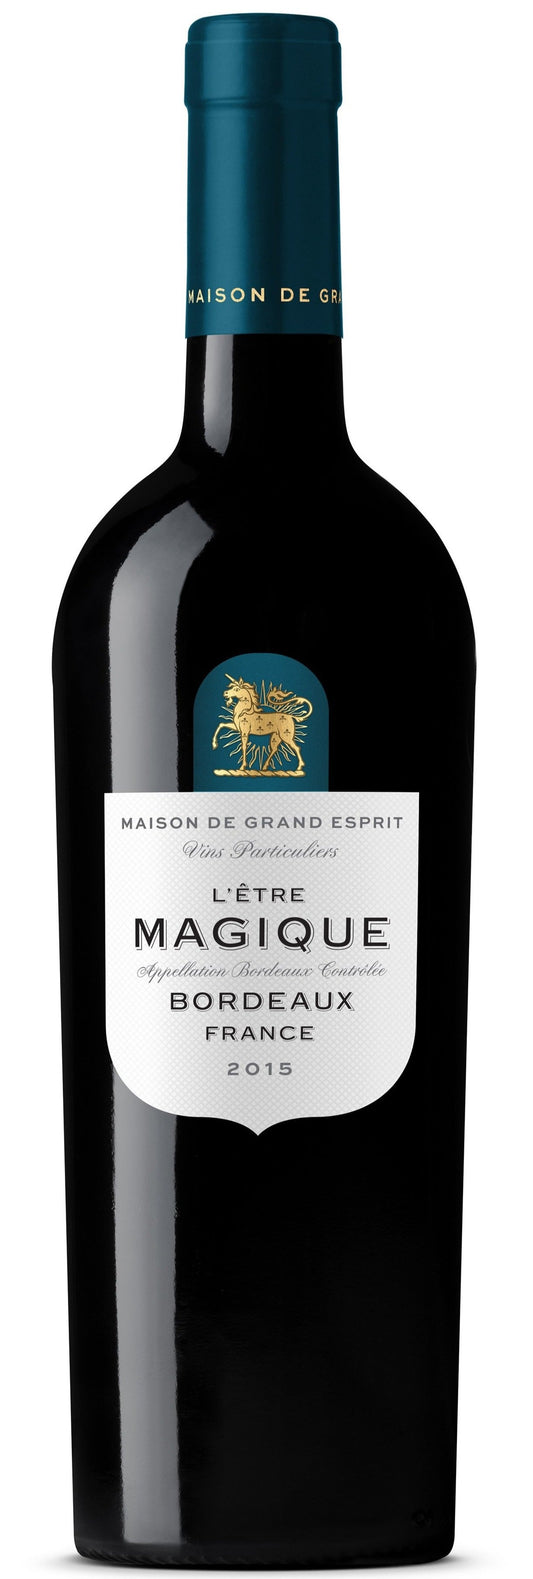 MDGE L'etre Magique Bordeaux Rouge - Premium Red Wine from Maison De Grand Esprit - Shop now at Whiskery